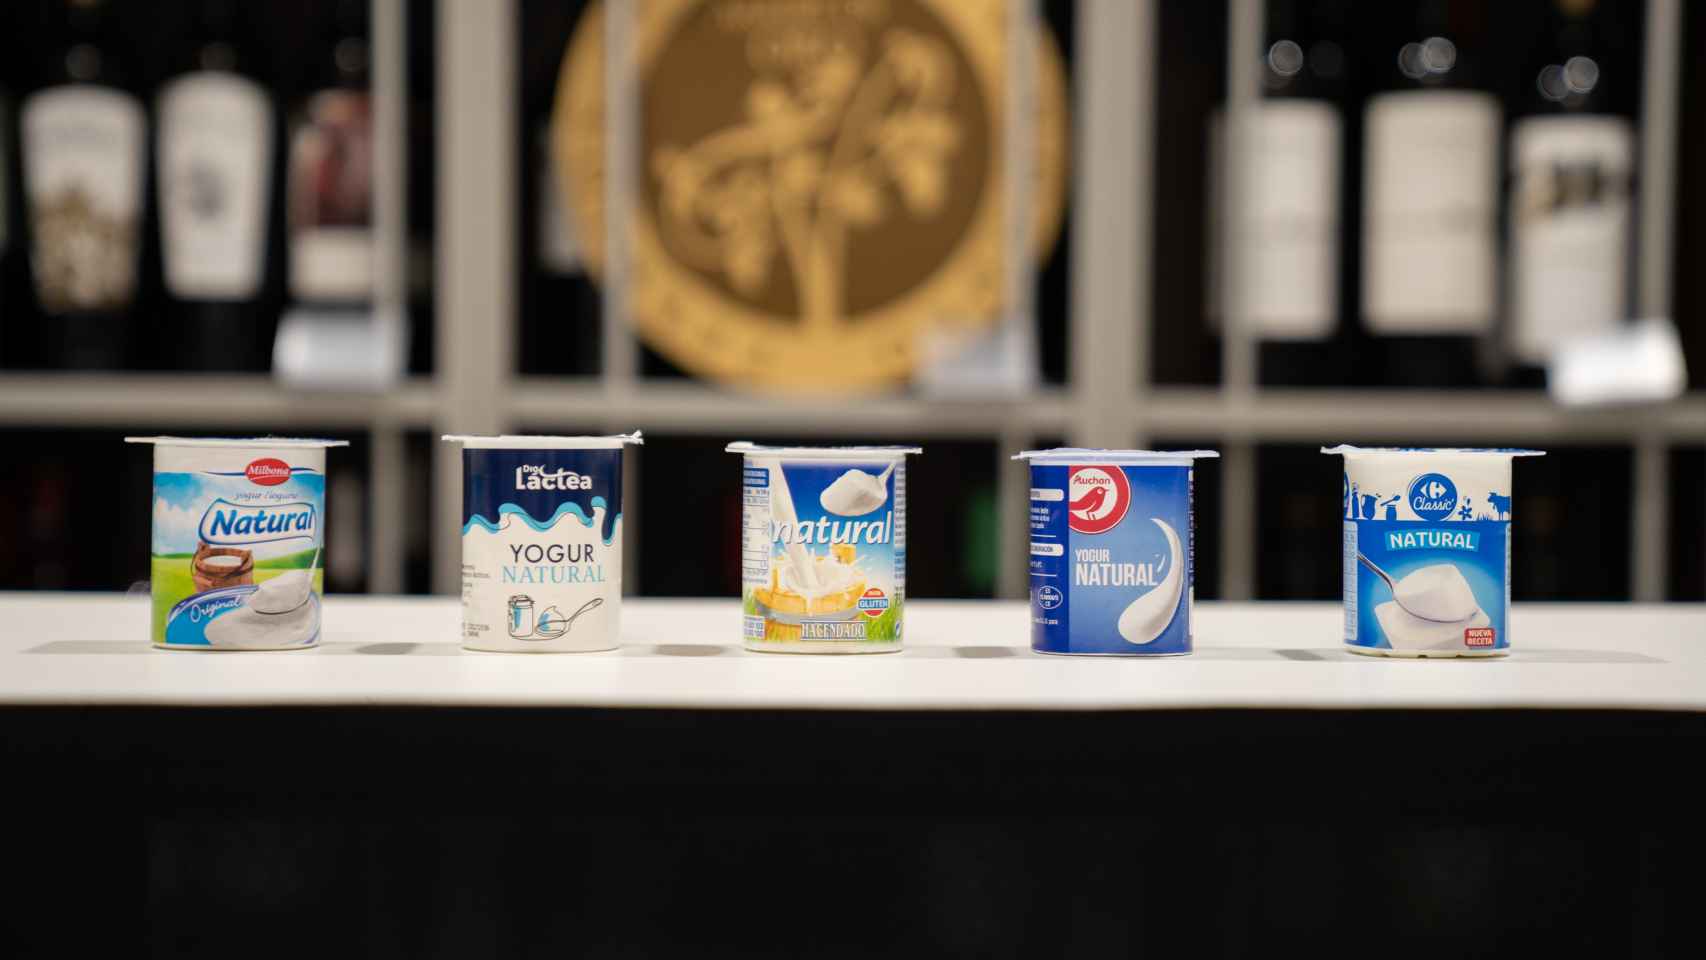 Los cinco yogures naturales de los supermercados testados en la cata.